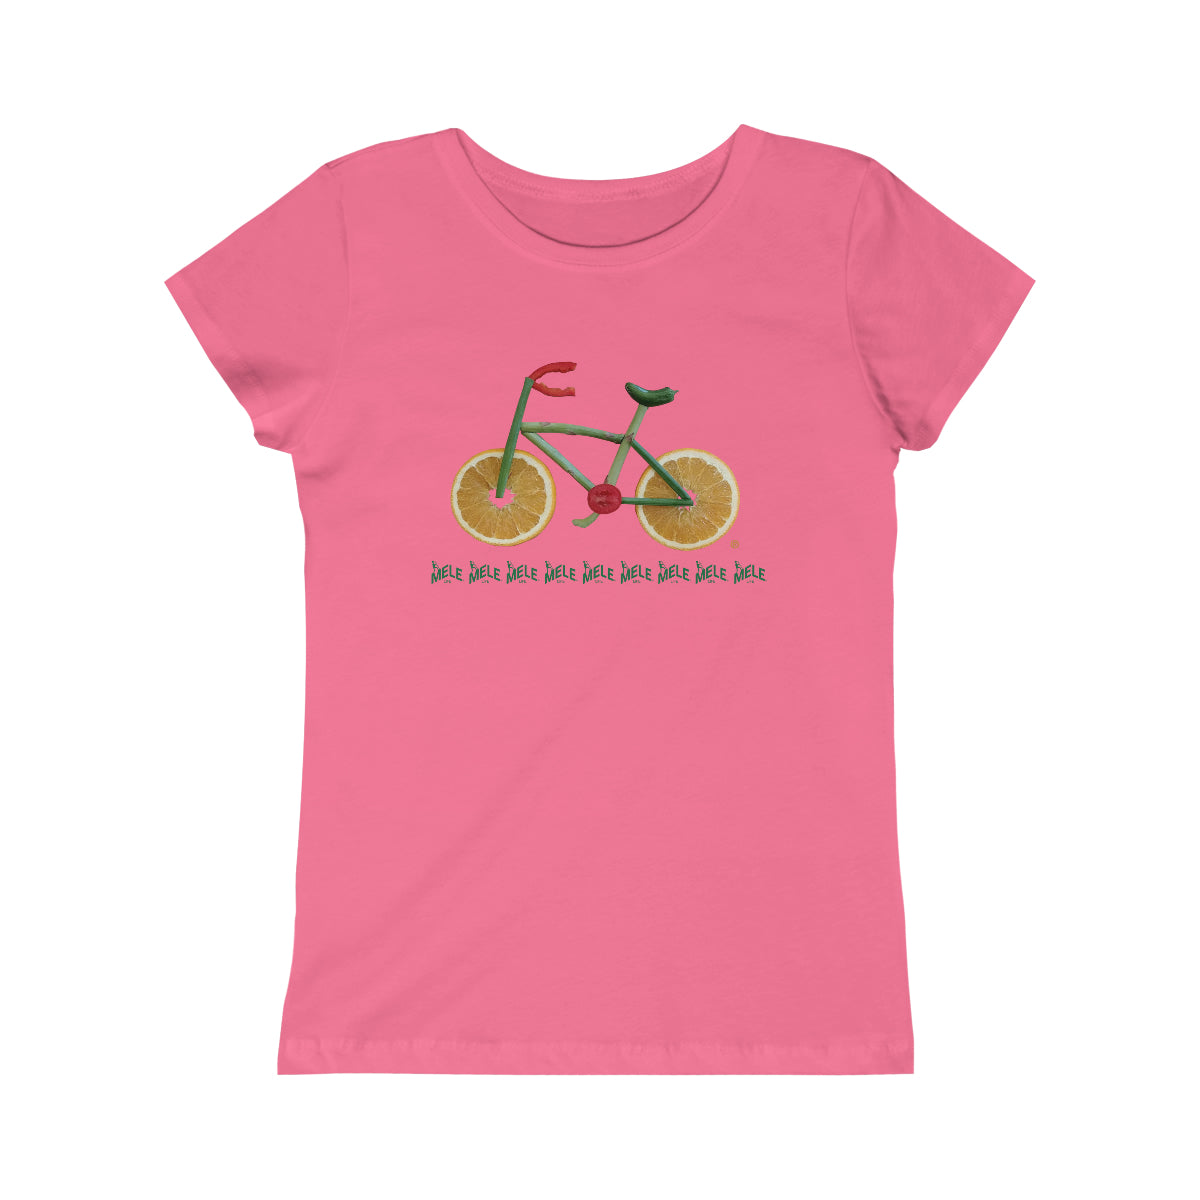 Girls Princess Tee - Veggie Bike